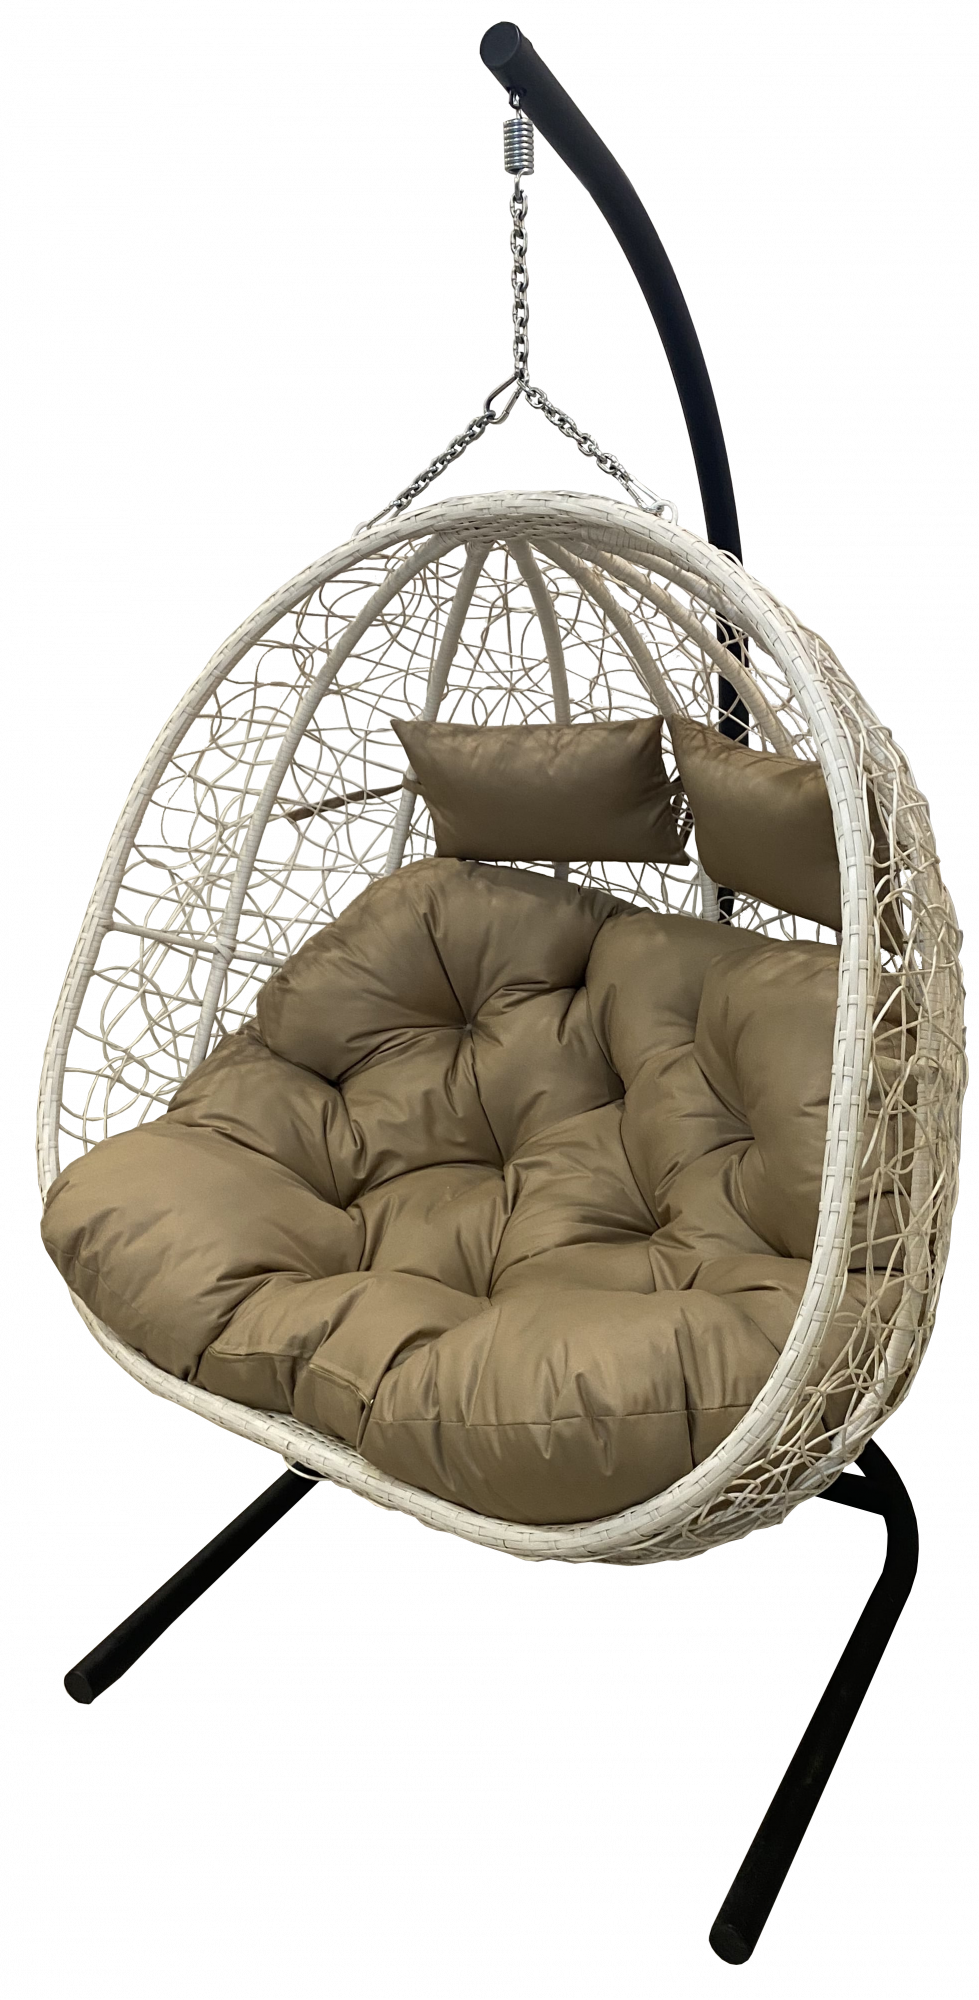 Подвесное кресло бежевое Garden Story Флора D40-МТ006 коричневая подушка